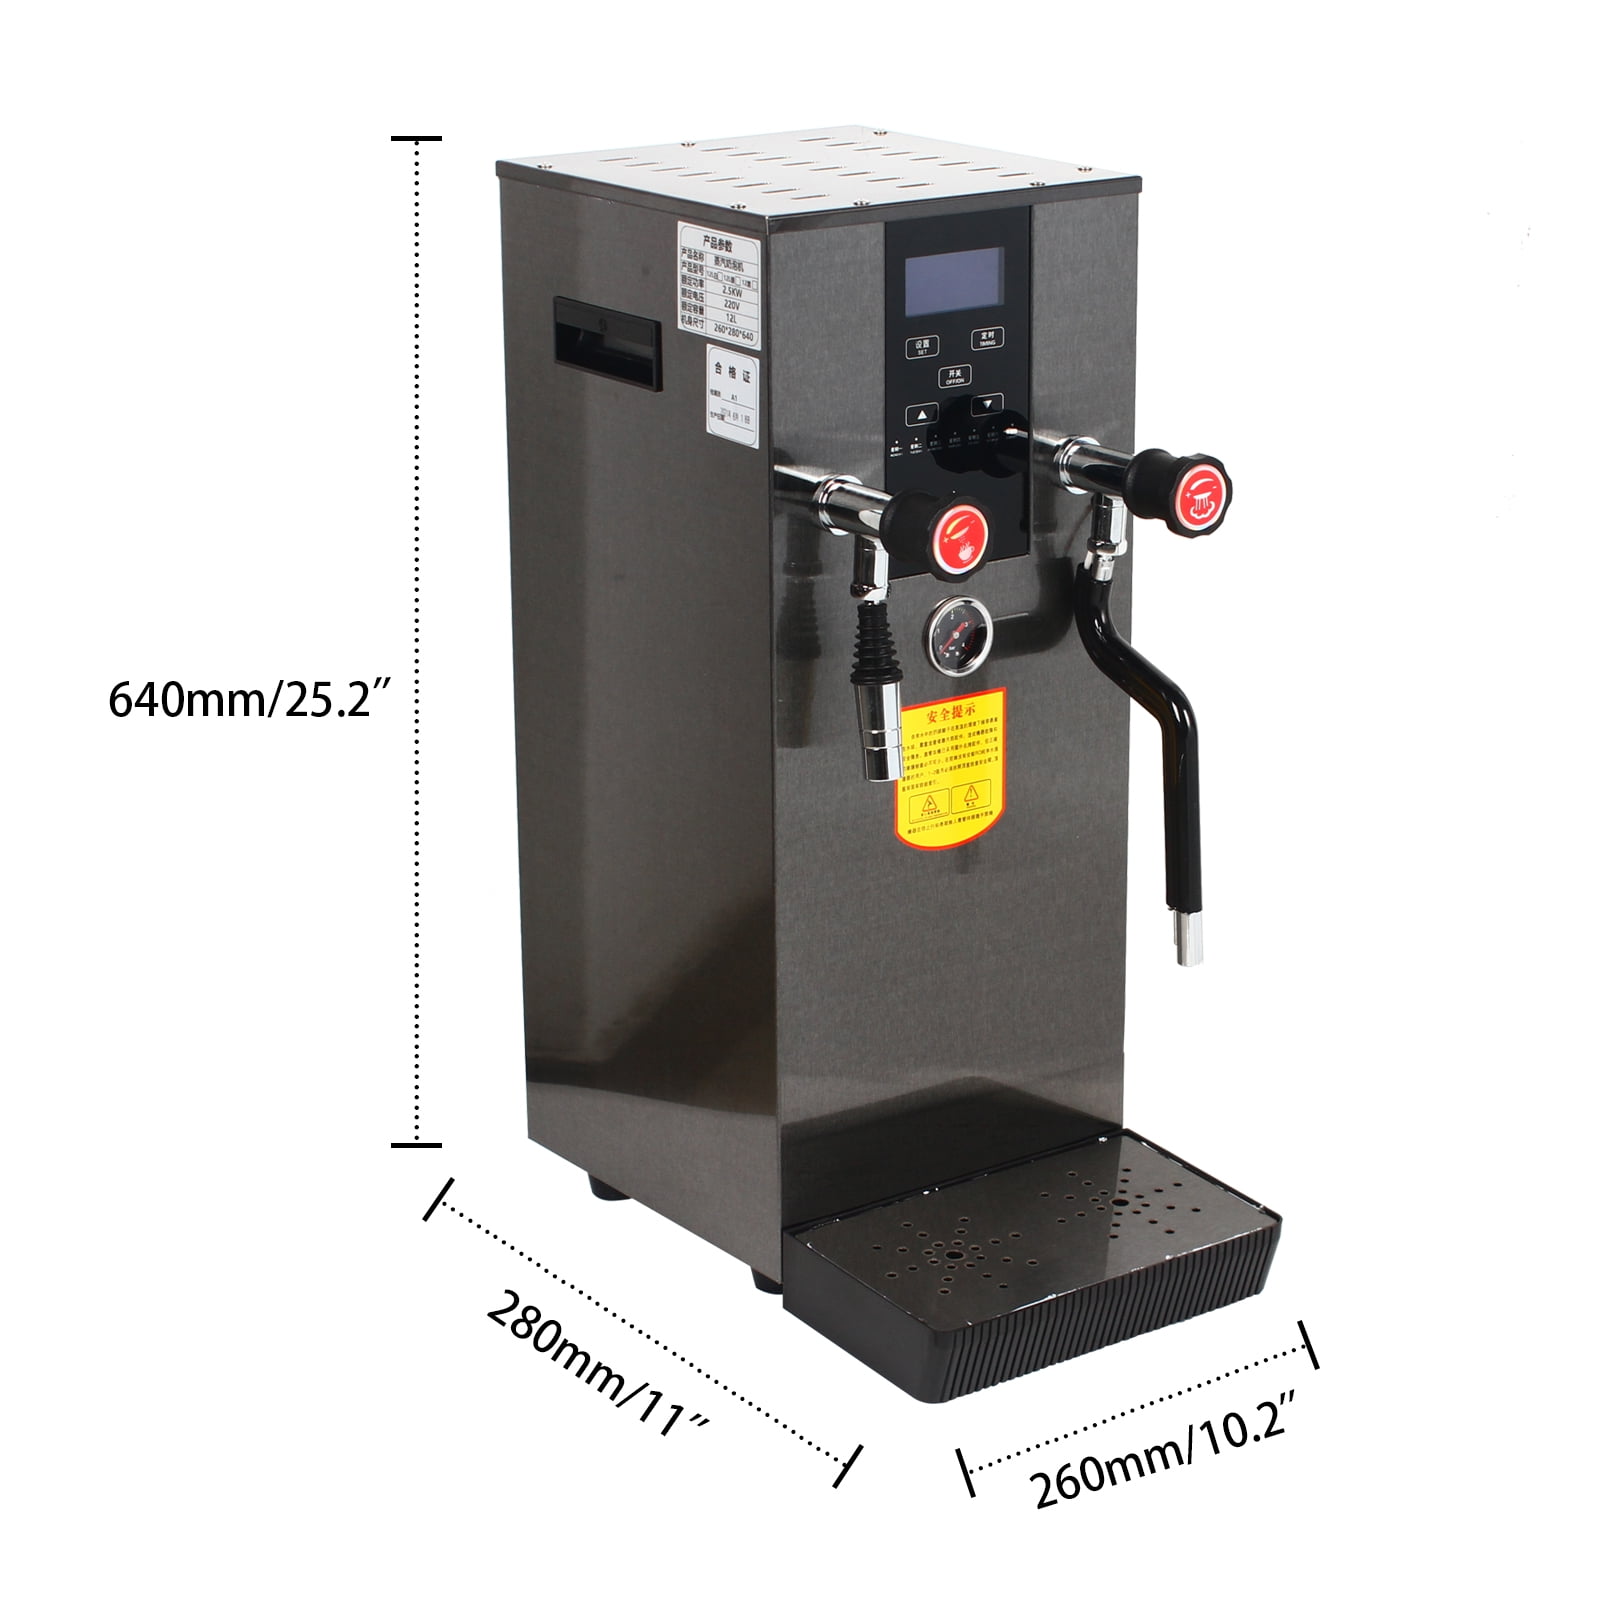 Black Steel Manual Milk Frothing Machine – CoffeeGearPlus